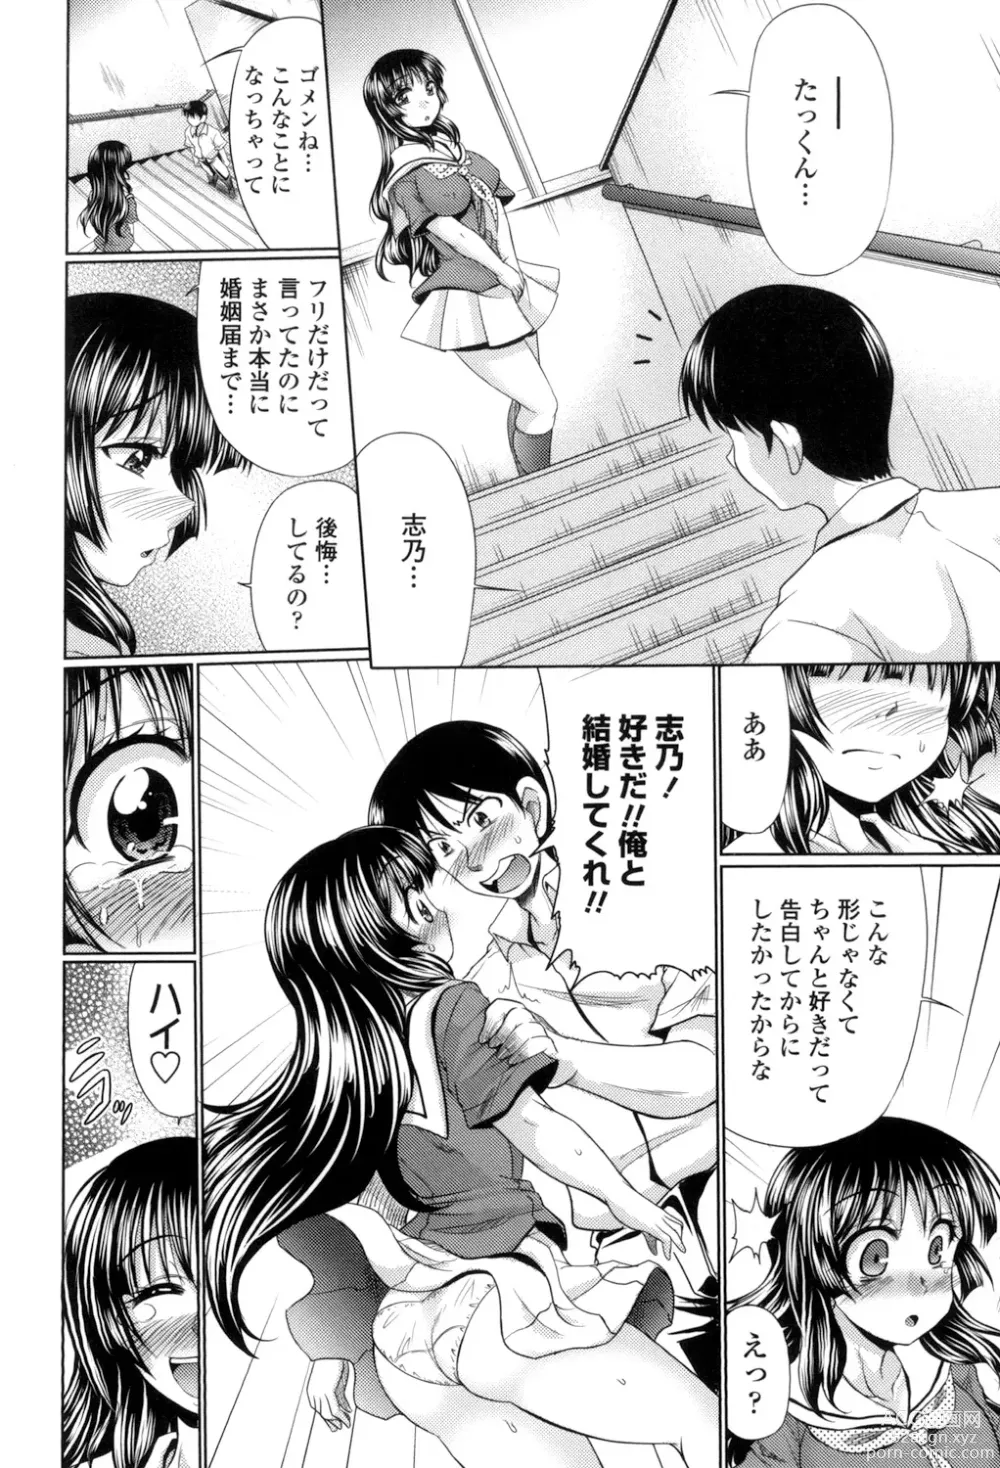 Page 10 of manga Class YoMaid